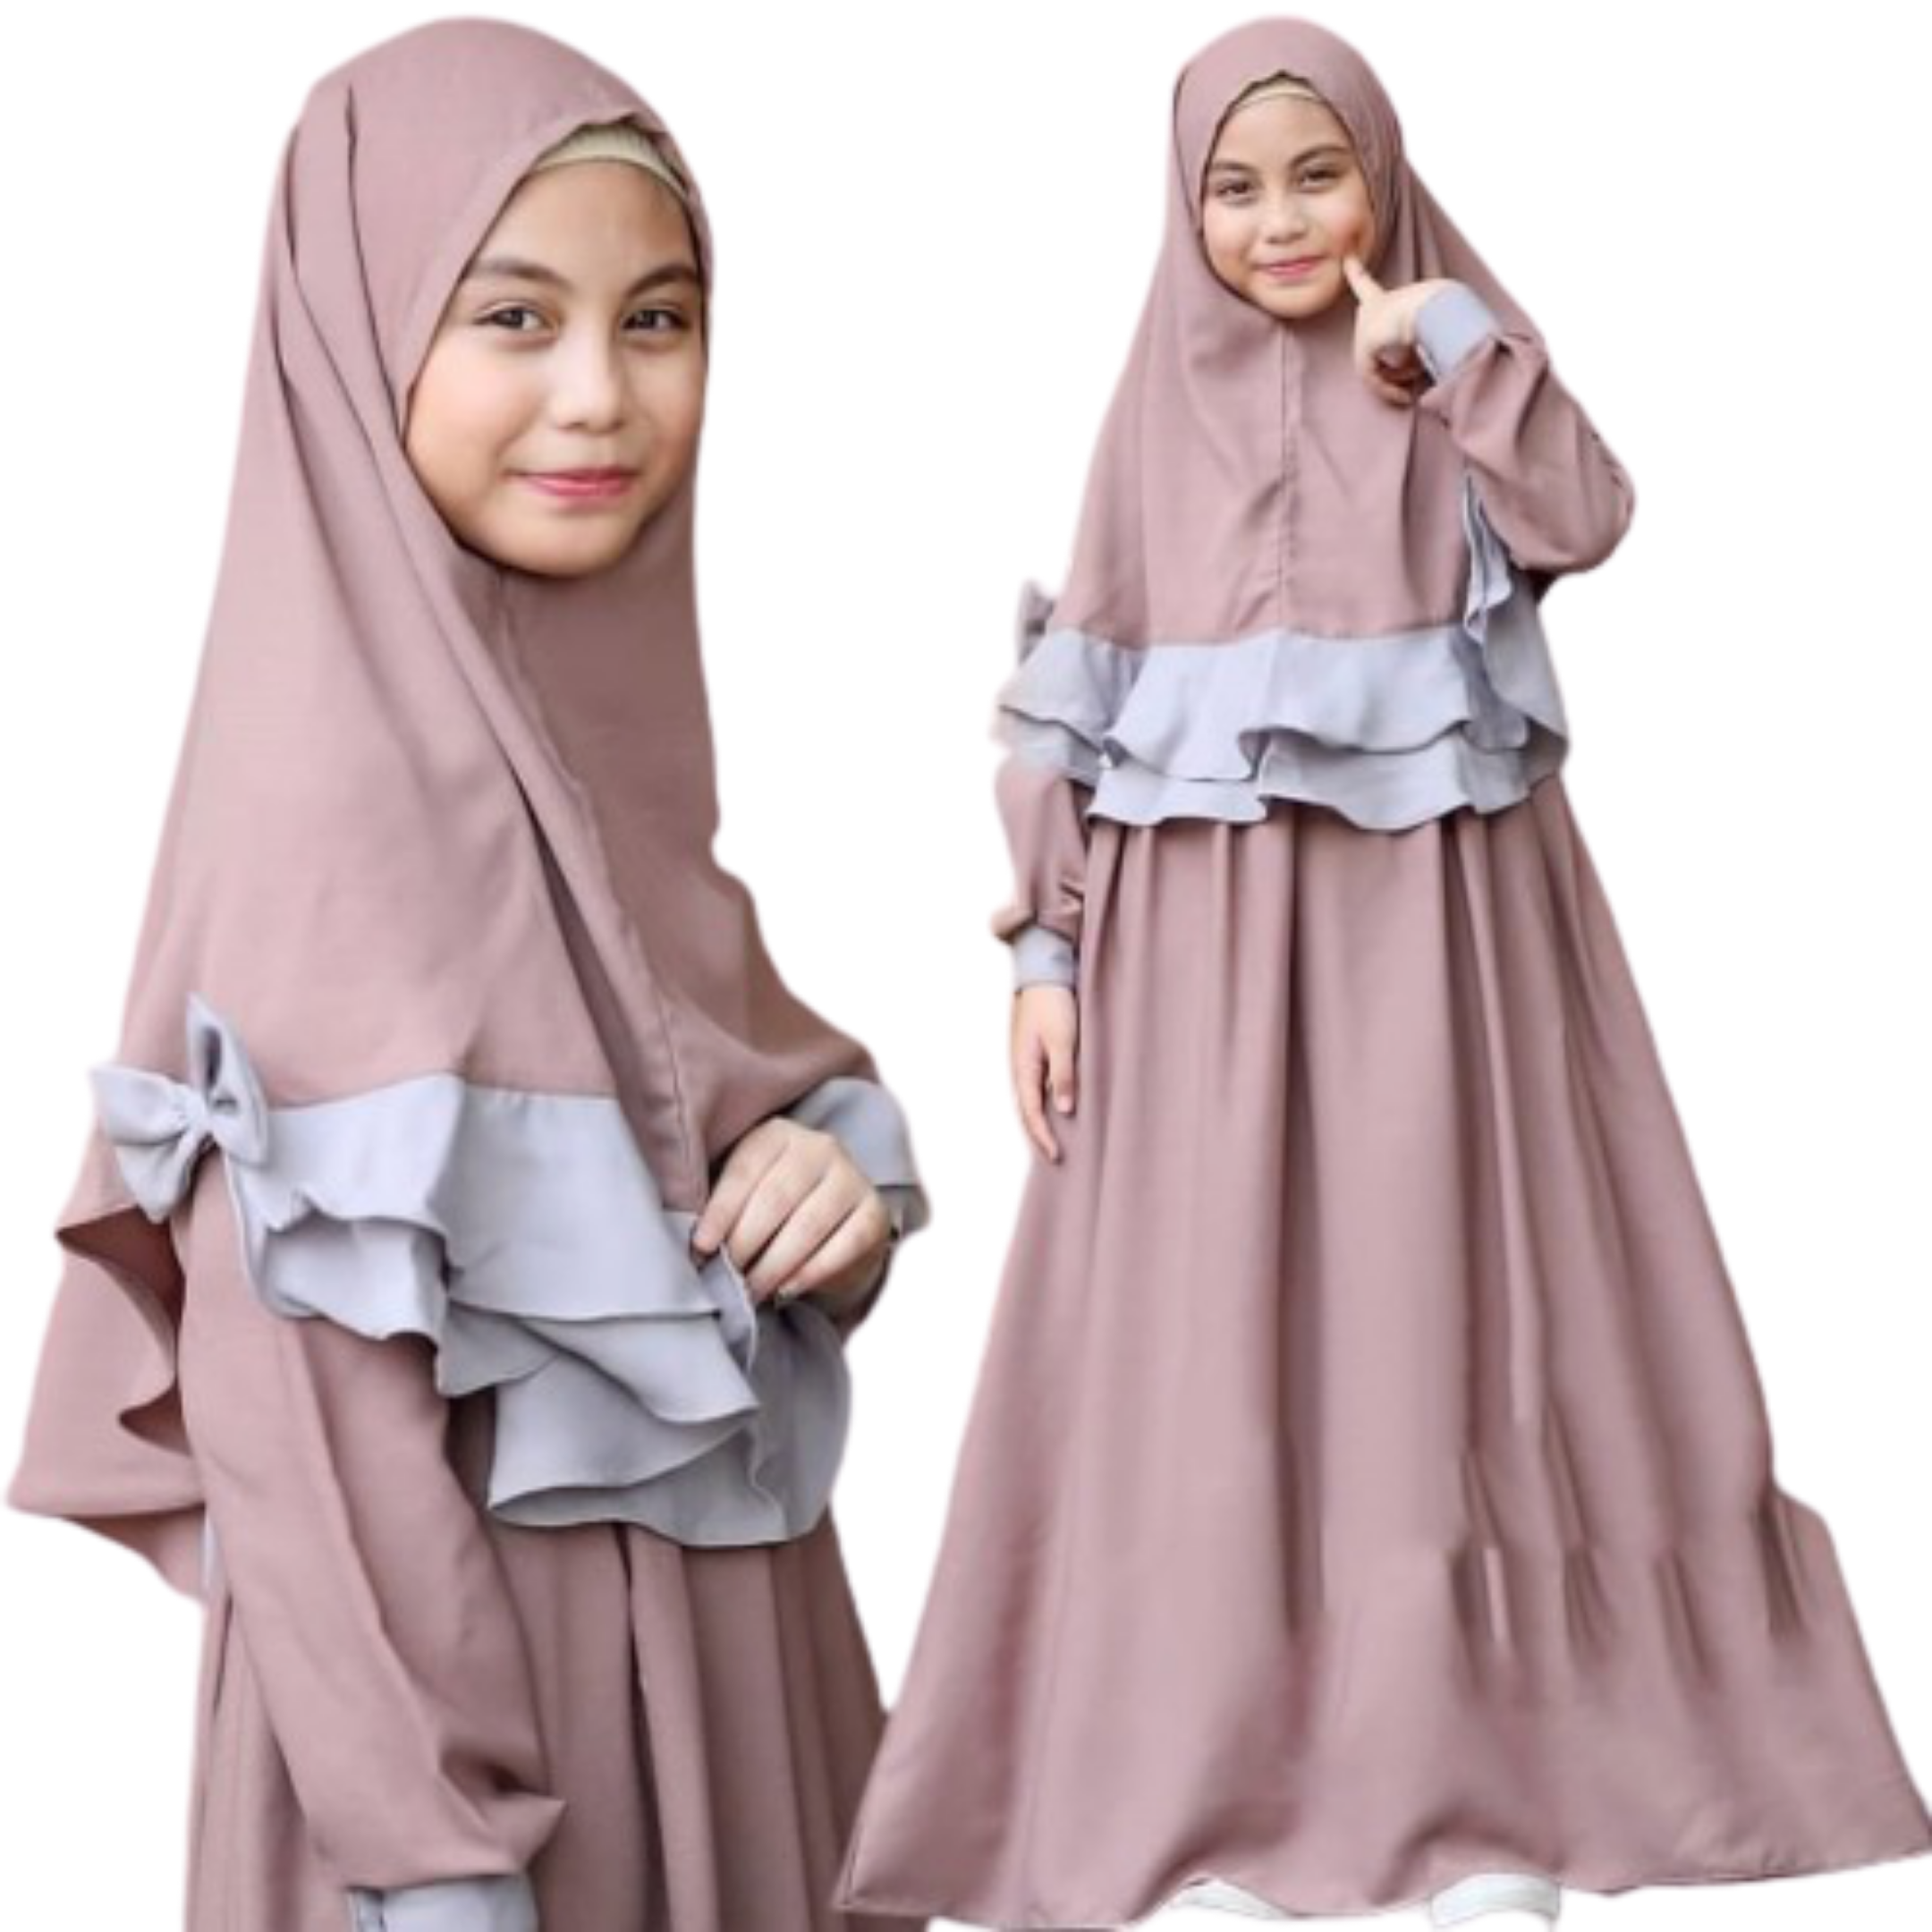 Gamis Anak Terbaru 2020 Model Gamis Anak Terbaru 2020 Baju Anak Perempuan Terbaru 2020 Baju Muslim Anank Perempuan Terbaru Gamis Anak Remaja Baju Muslim Trend 2020 Baju